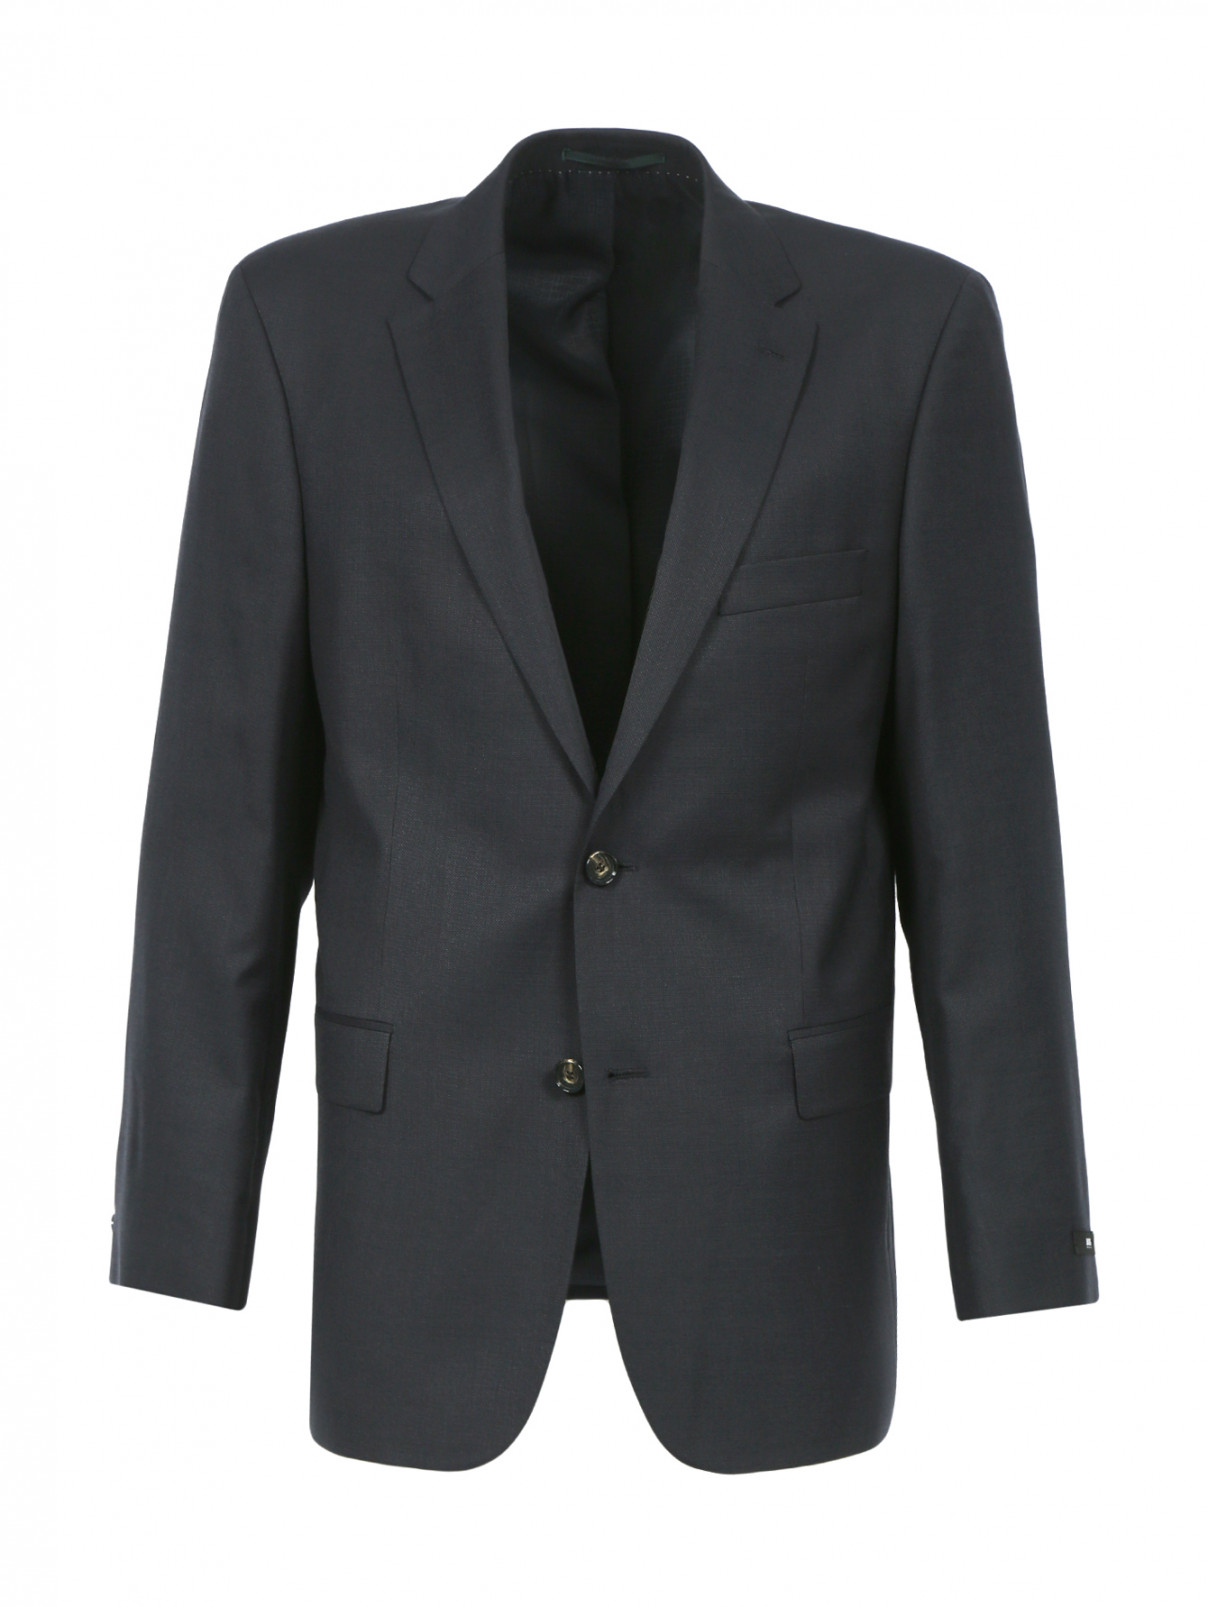 Однобортный пиджак из шерсти и шелка Boss  –  Общий вид  – Цвет:  Серый